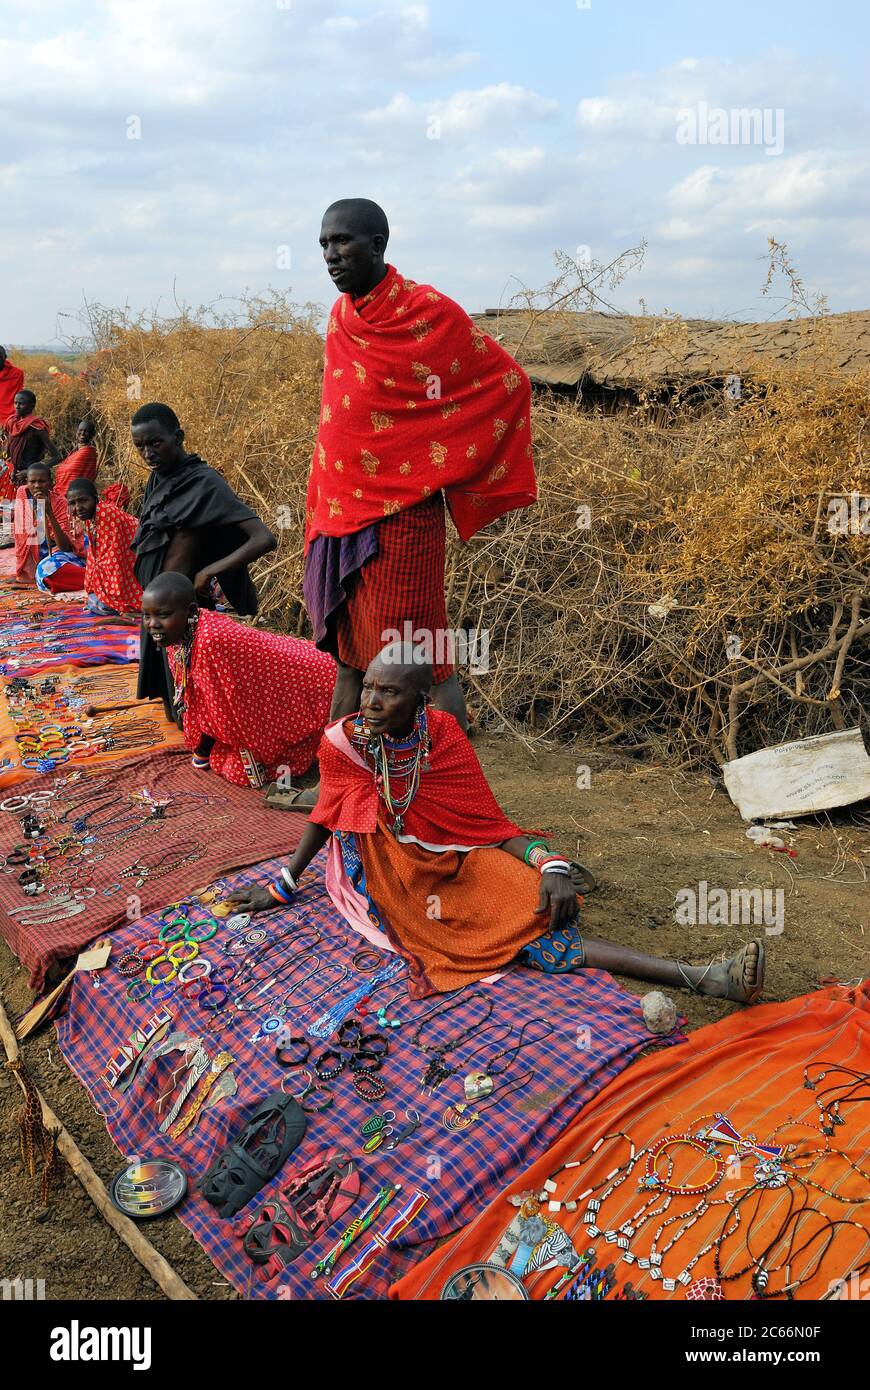 MASAI MARA, KENYA - AGOSTO 23: Venditori locali della tribù Masai offrono merci nel mercato, il 23 Agosto 2010 a Masai Mara. Accessori tradizionali fatti a mano Foto Stock